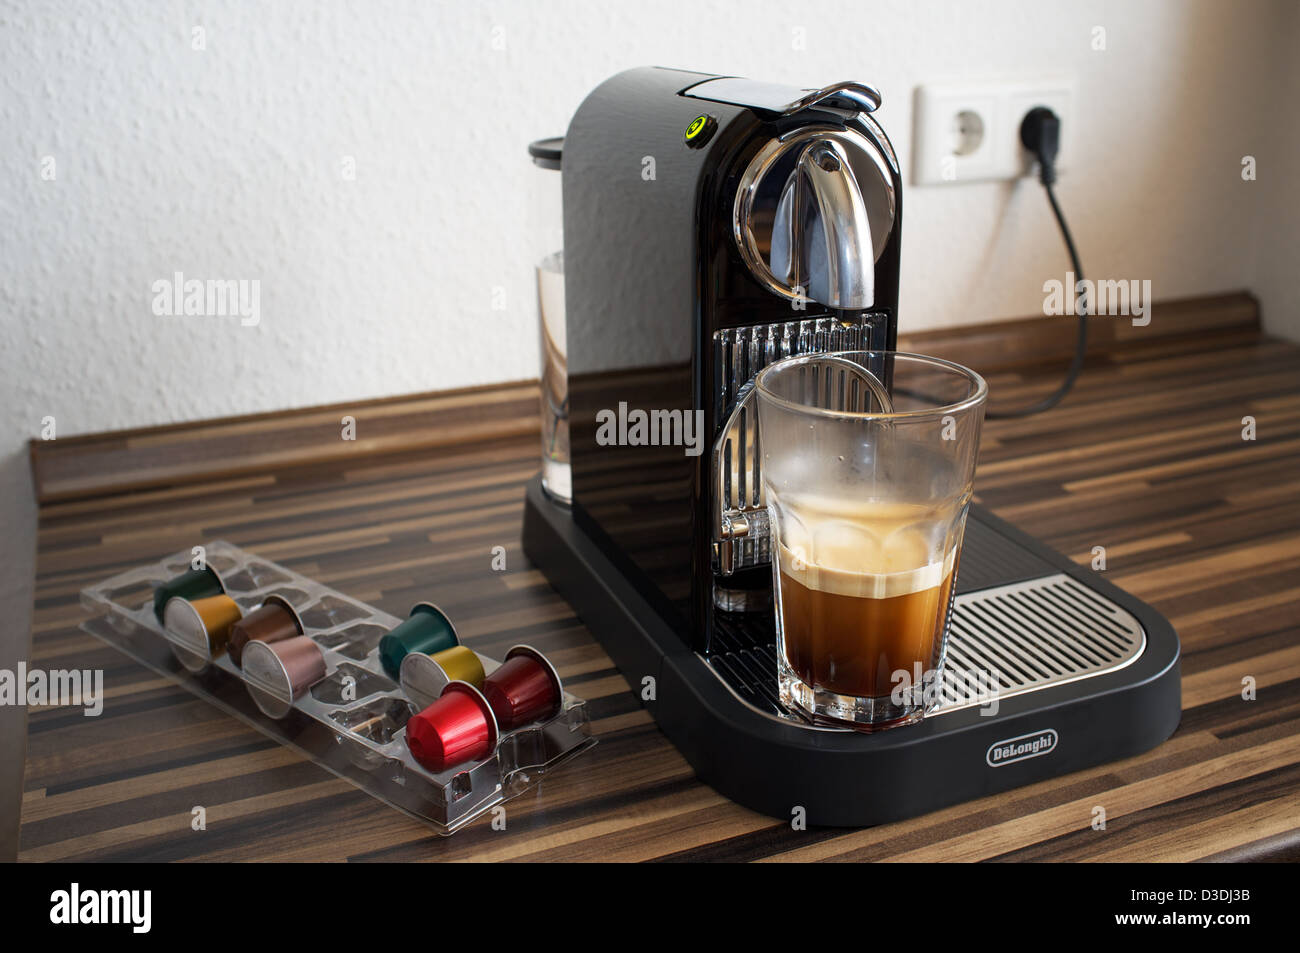 Cafetera Nespresso DeLonghi Fotografía de stock - Alamy